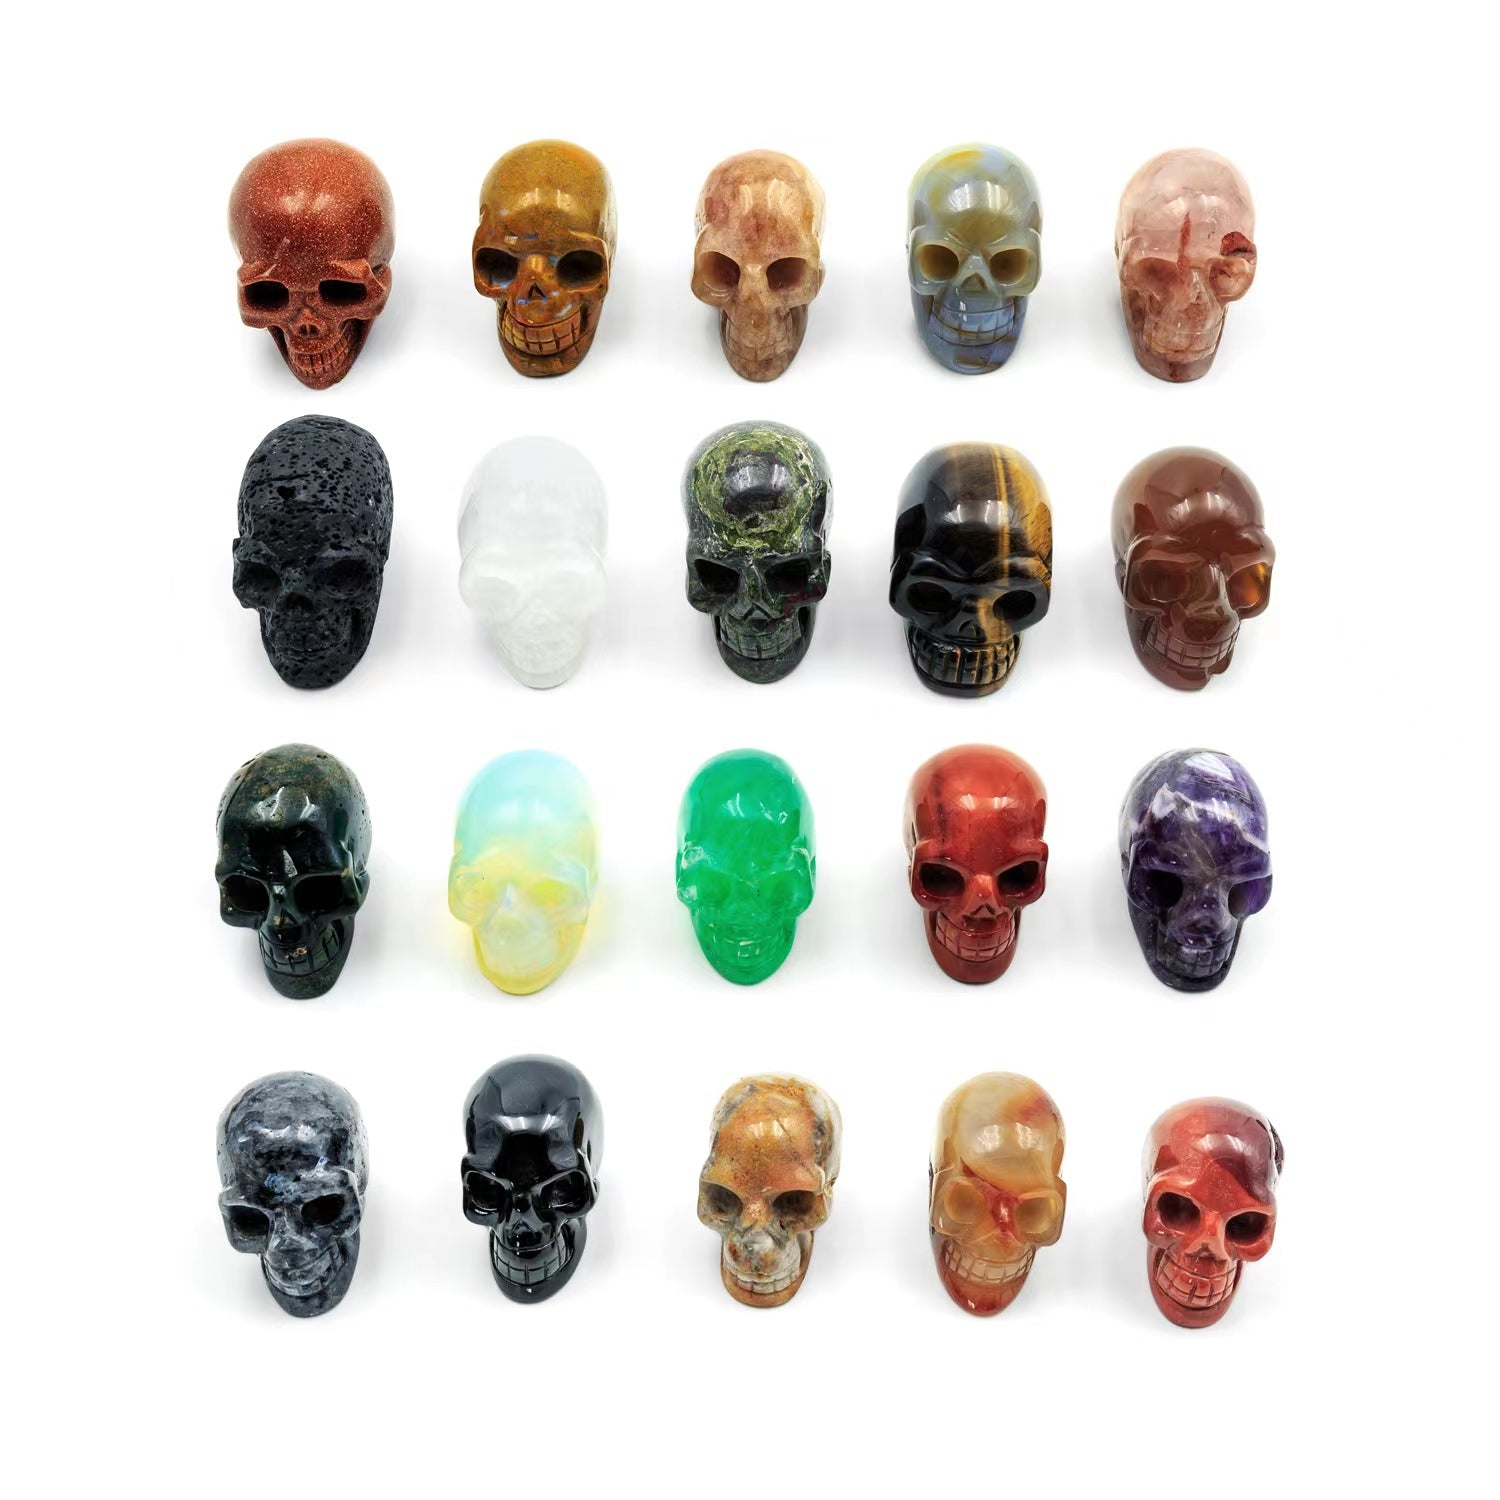 Reikistal 【Abundance energy/power】Mystery Crystal Skull Box